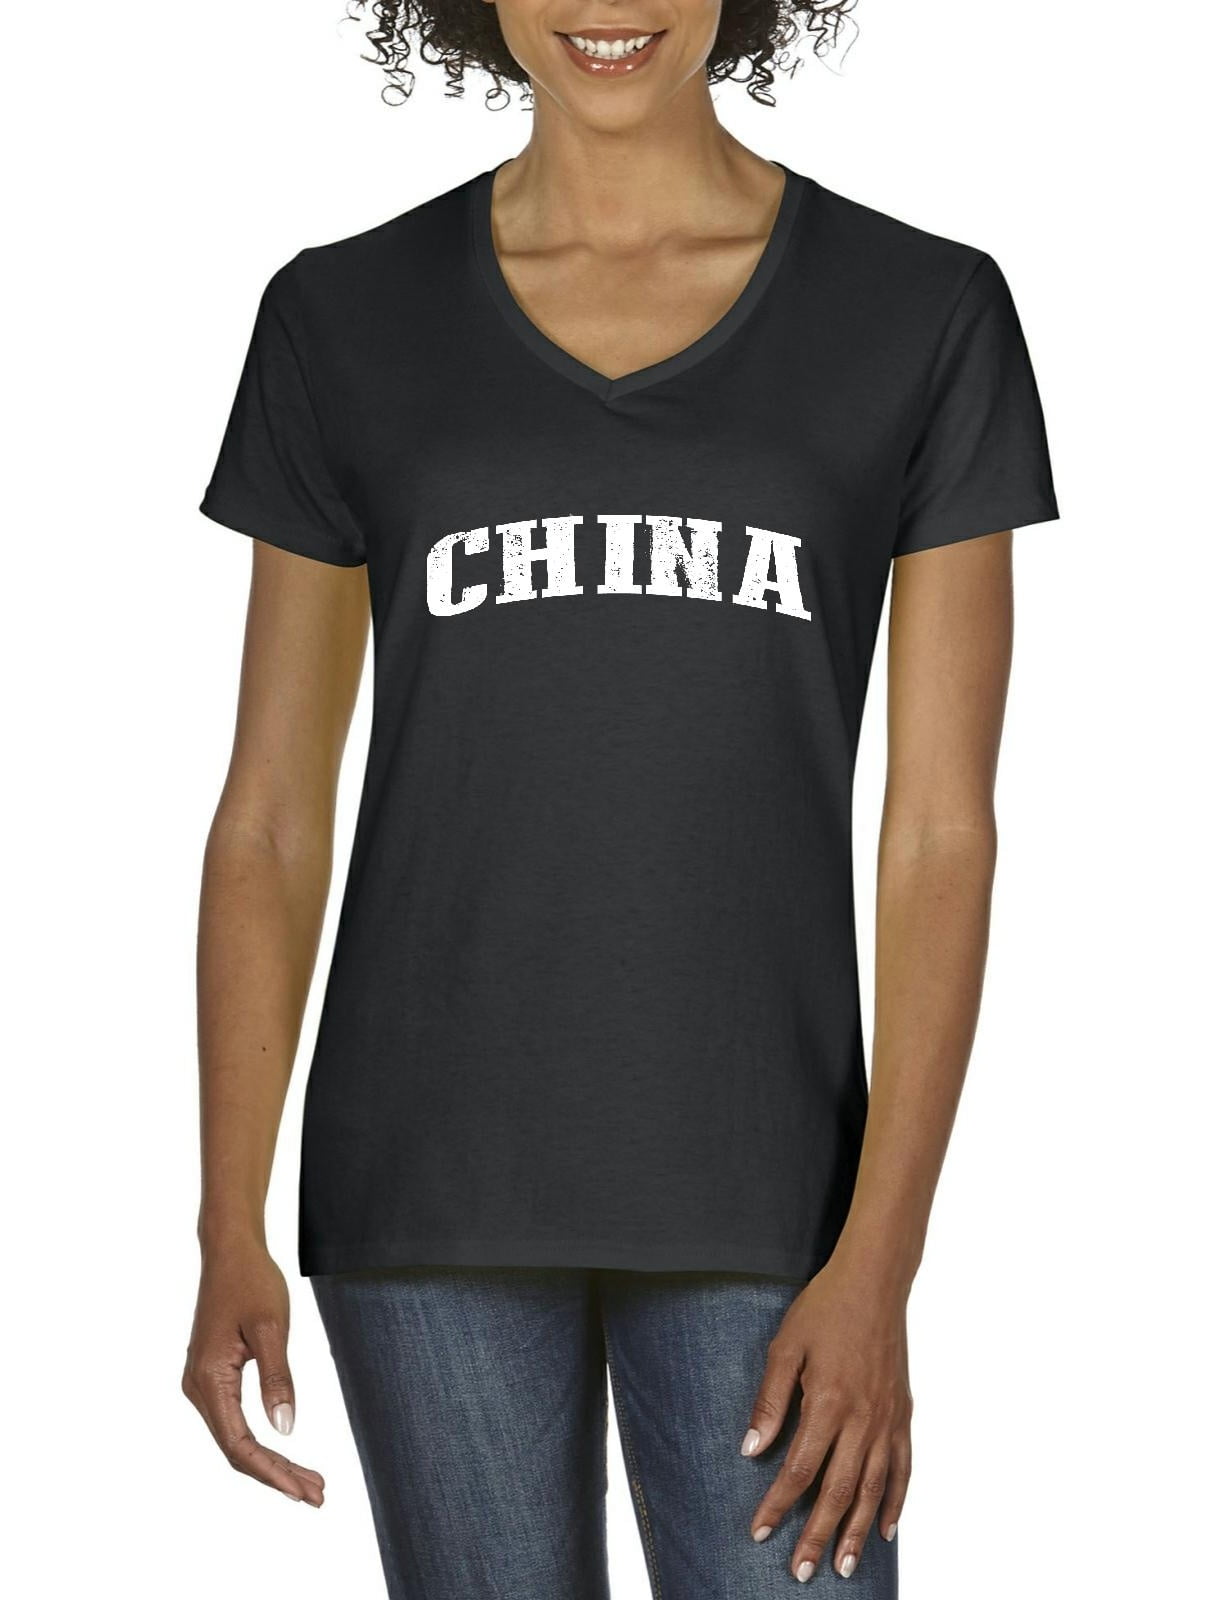 Womens clothing deals online xuan hong